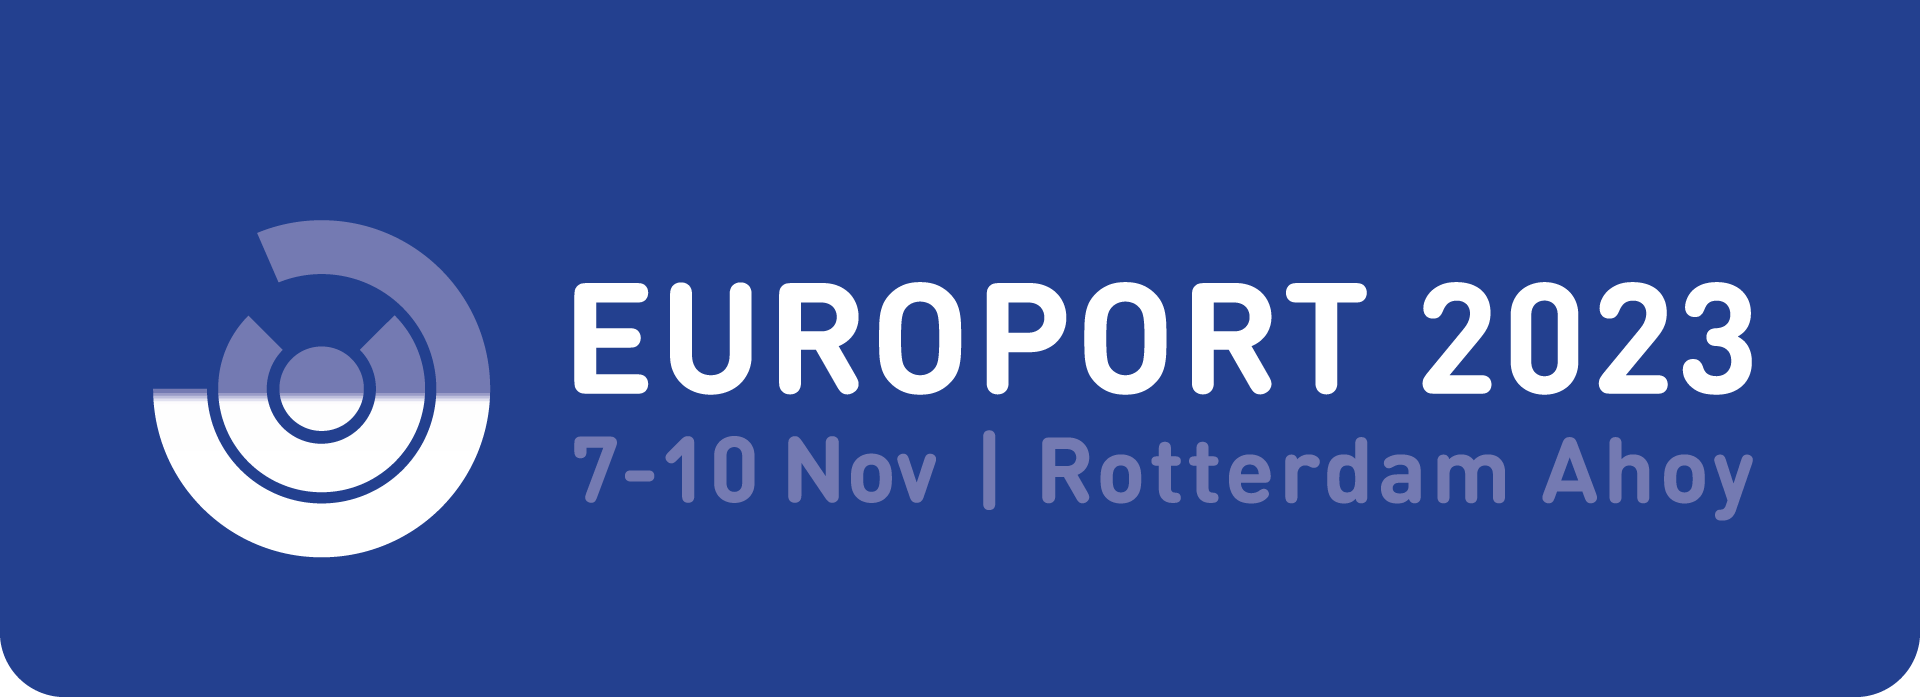 europort-logo-2023-blauwvlak-cmyk